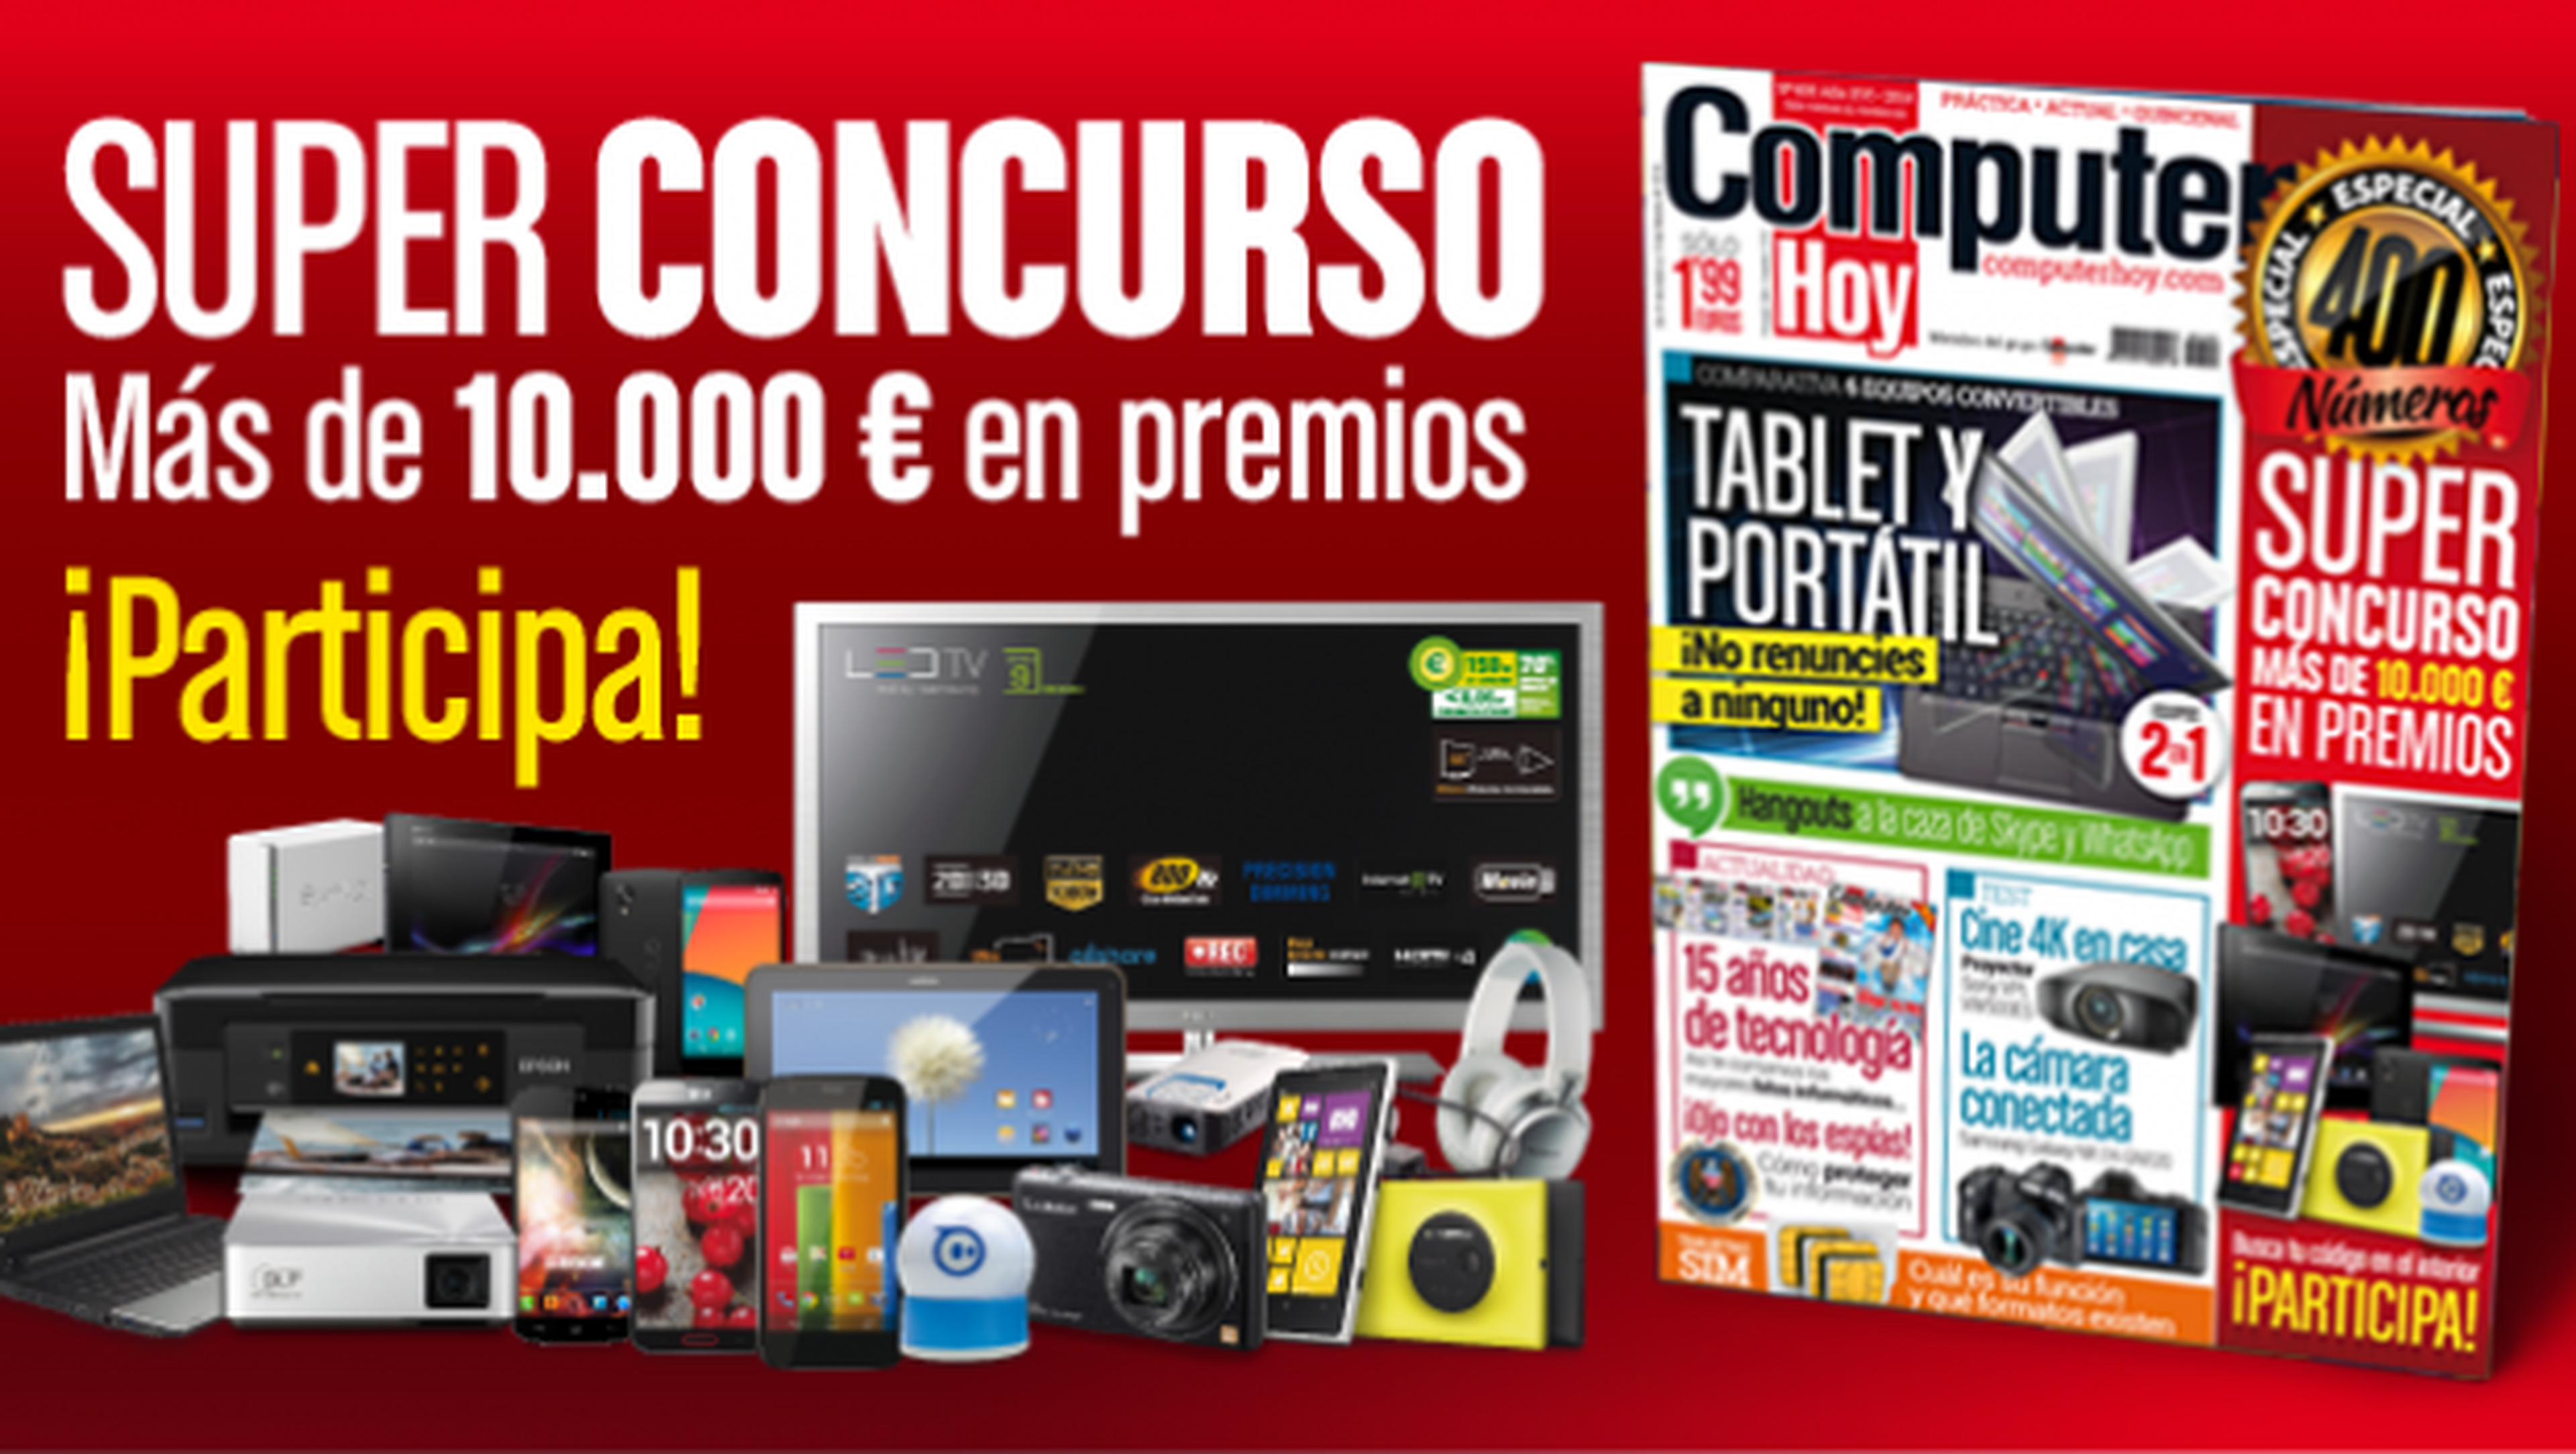 Super Concurso Computer Hoy 400. Más de 10.000 € en premios.